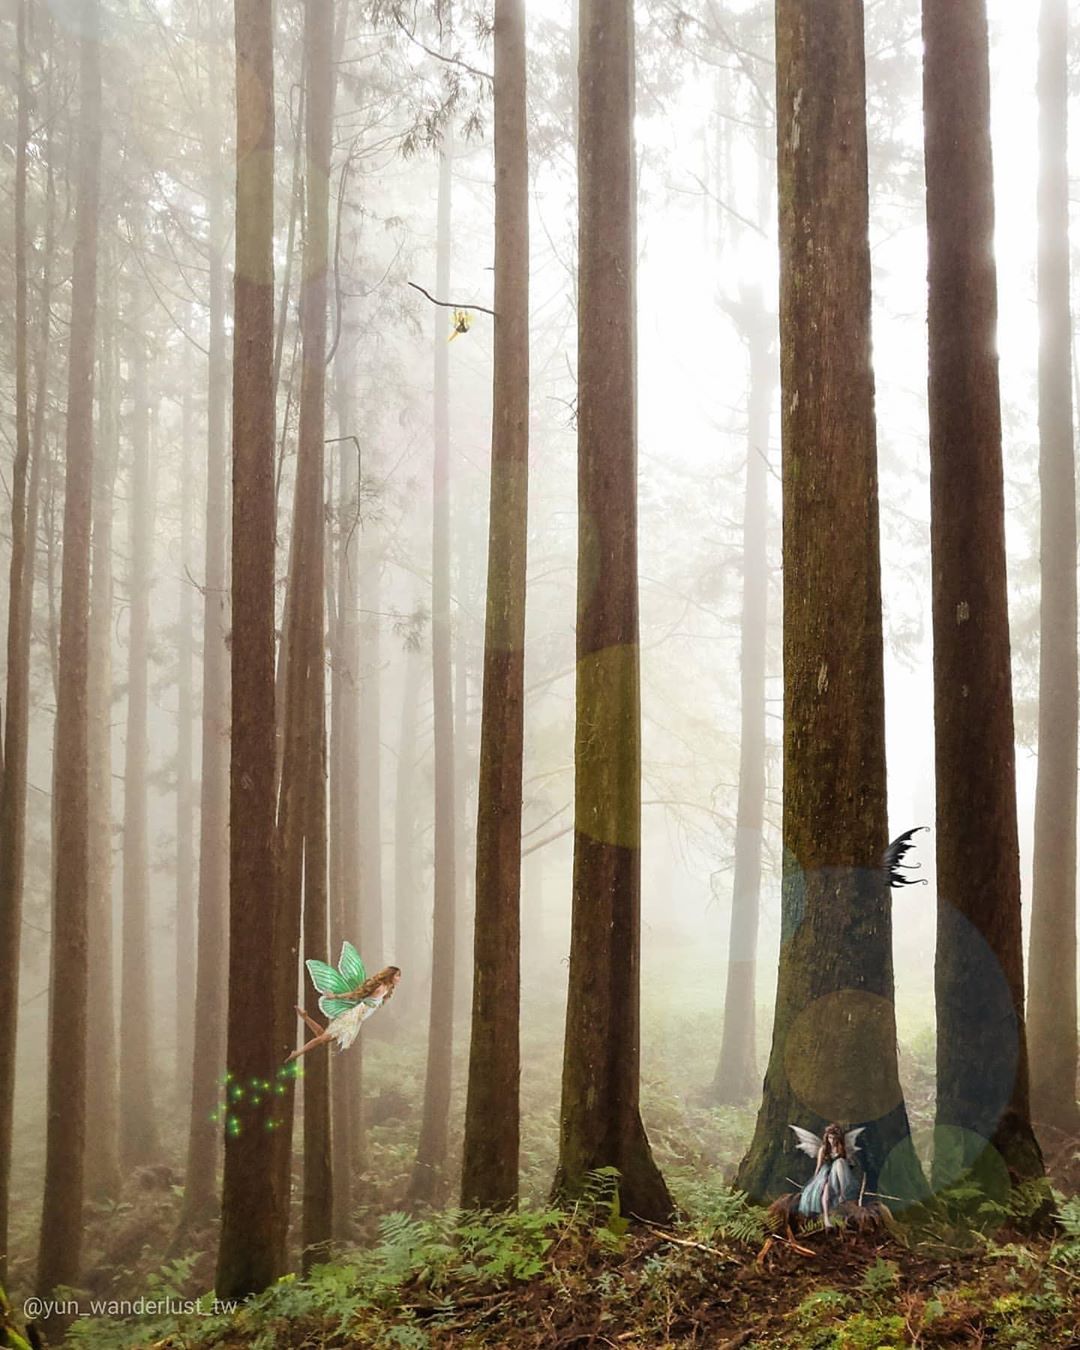 如果說在這片森林中有精靈出現他們一定是守護這些樹木的精靈吧‍♀️-⠀⠀⠀⠀⠀⠀⠀⠀⠀⠀⠀感謝 @yun_wanderlust_tw...